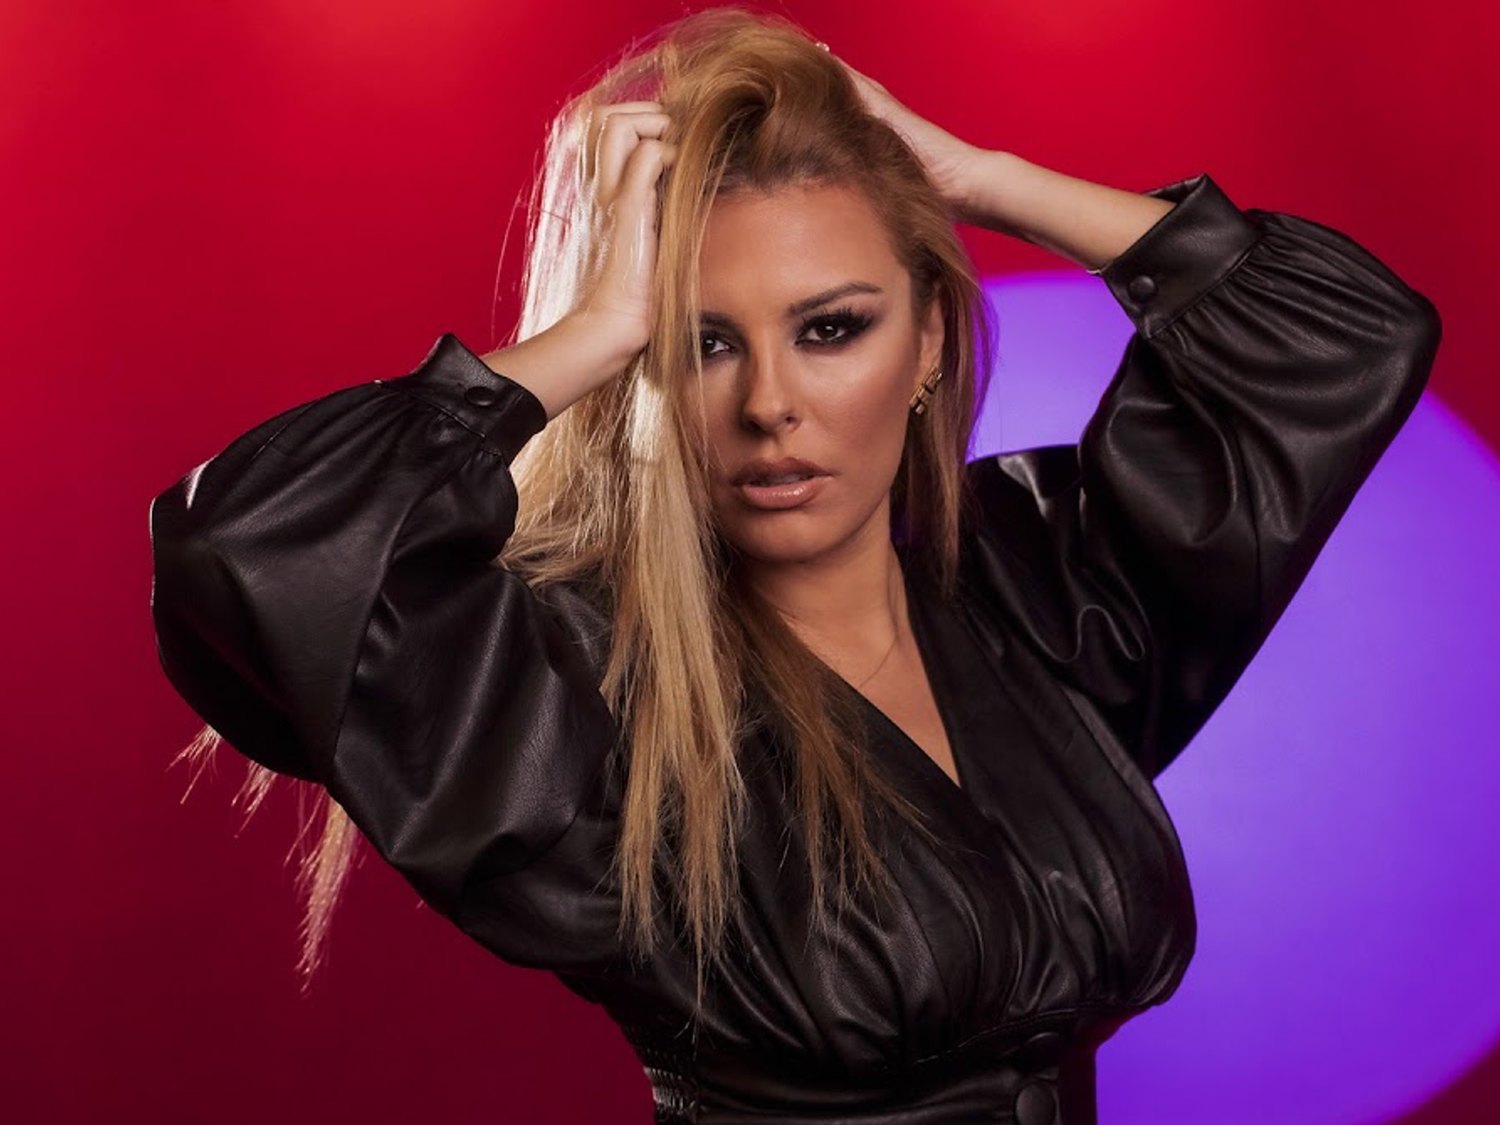 Anxhela Peristeri vence el 'Festivali ï Kengës' y representará a Albania en Eurovisión 2021